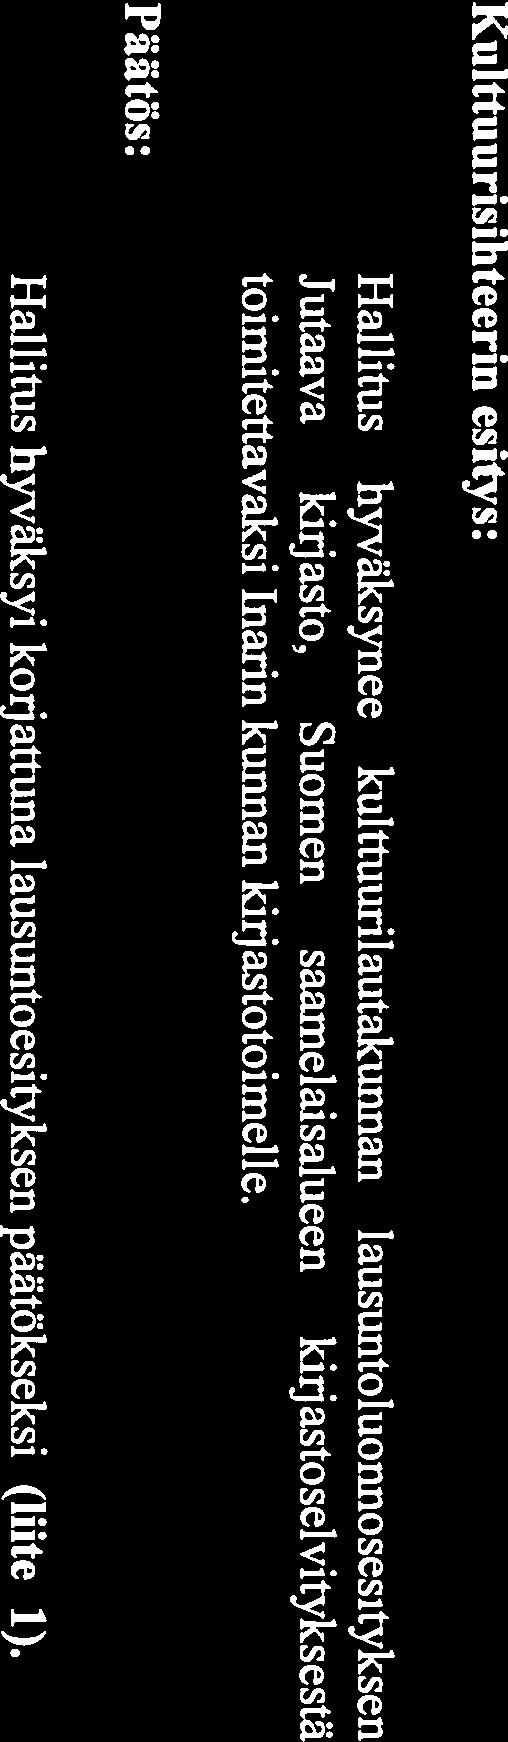 SÄMEDIGGI PÖYTÄKJRJA 1/2013 Hallitus sivu 5 (28) Sh 5 Lausunto Jutaava kirjasto Suomen saamelaisalueen kirjastoselvityksestä Sh